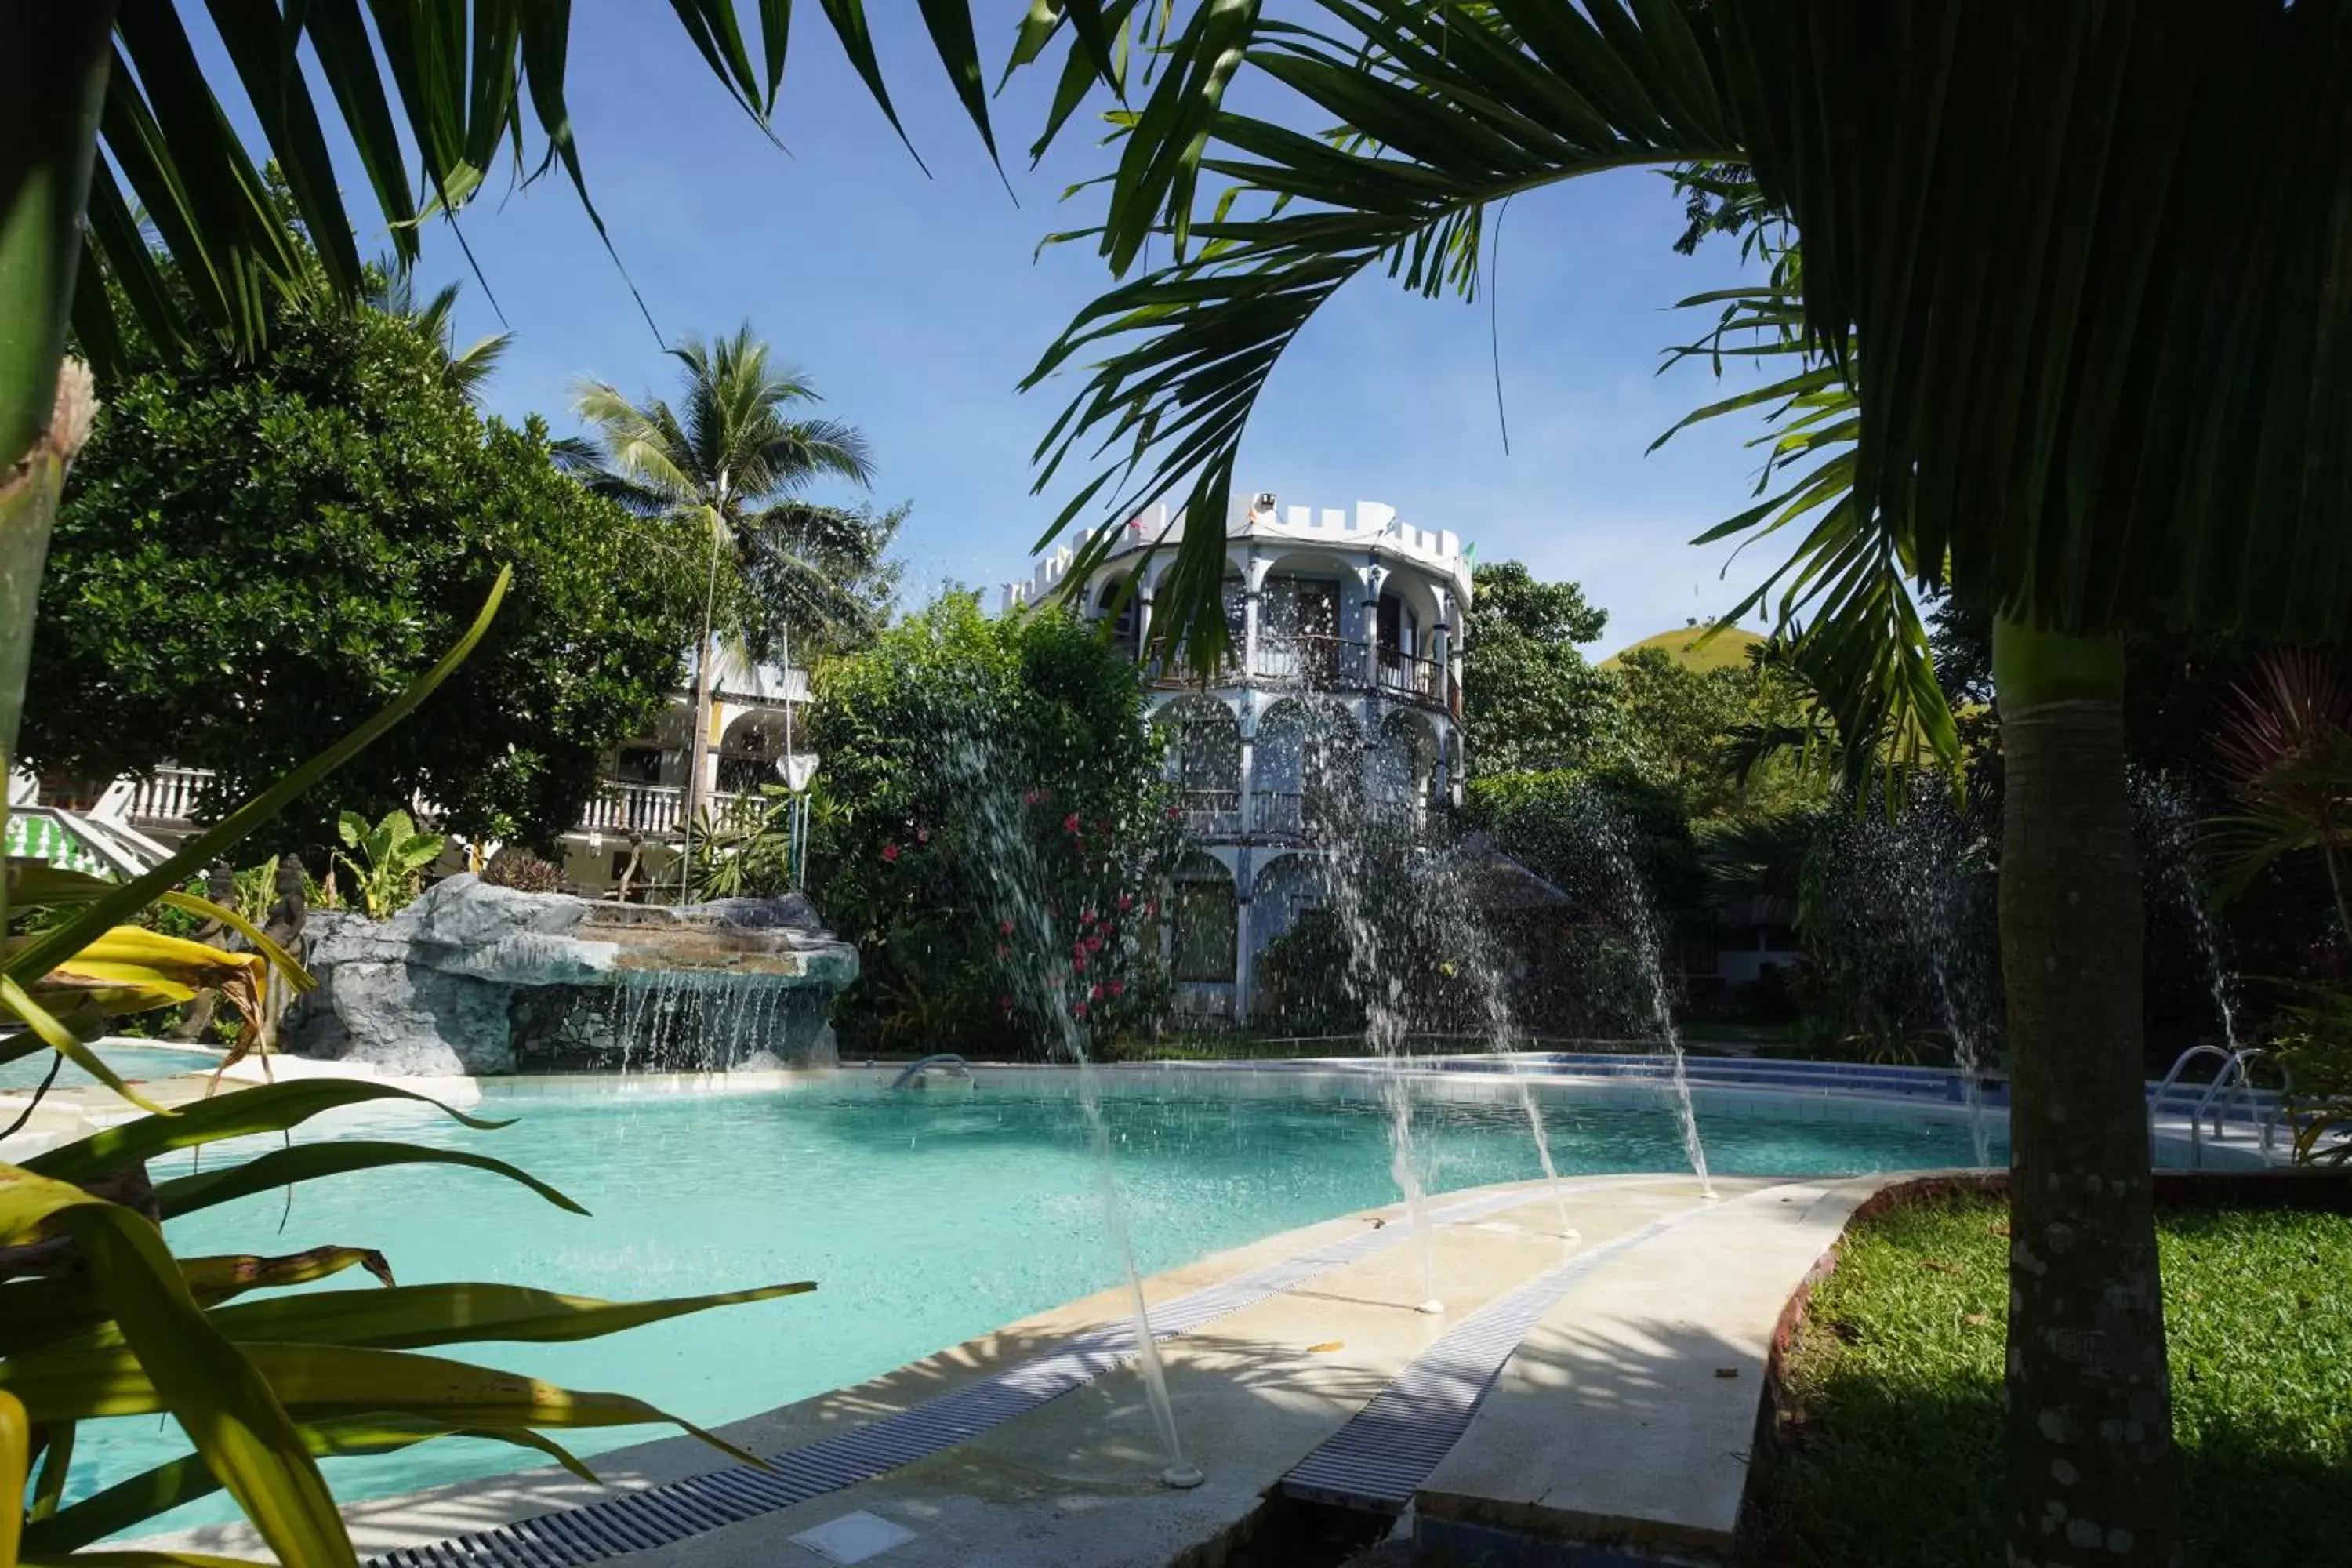 Swimming Pool in Kokosnuss Garden Resort